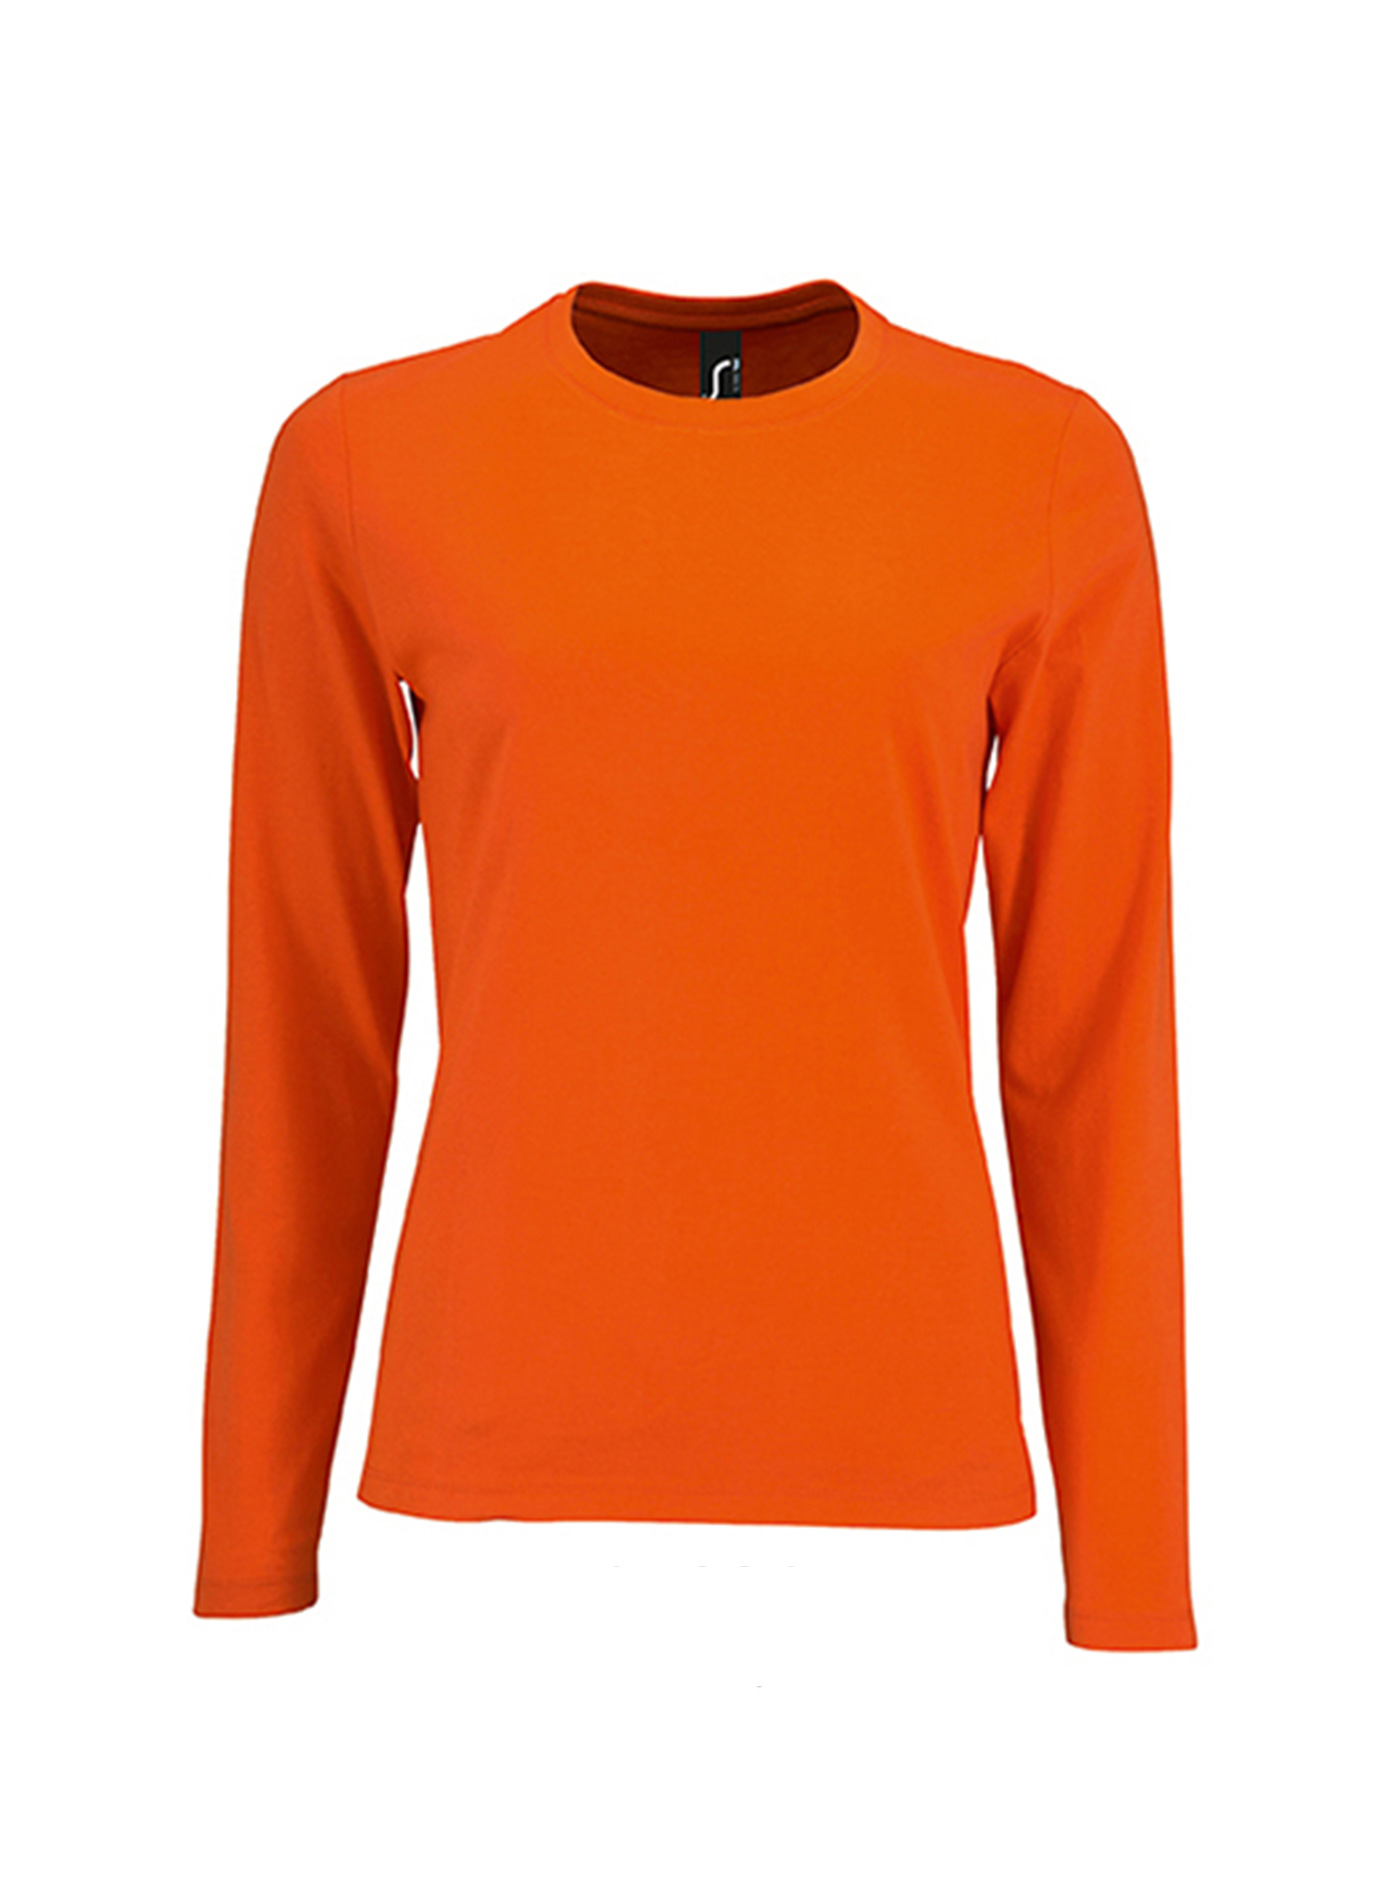 Dámské tričko s dlouhým rukávem SOL´S Imperial - Zářivá oranžová M